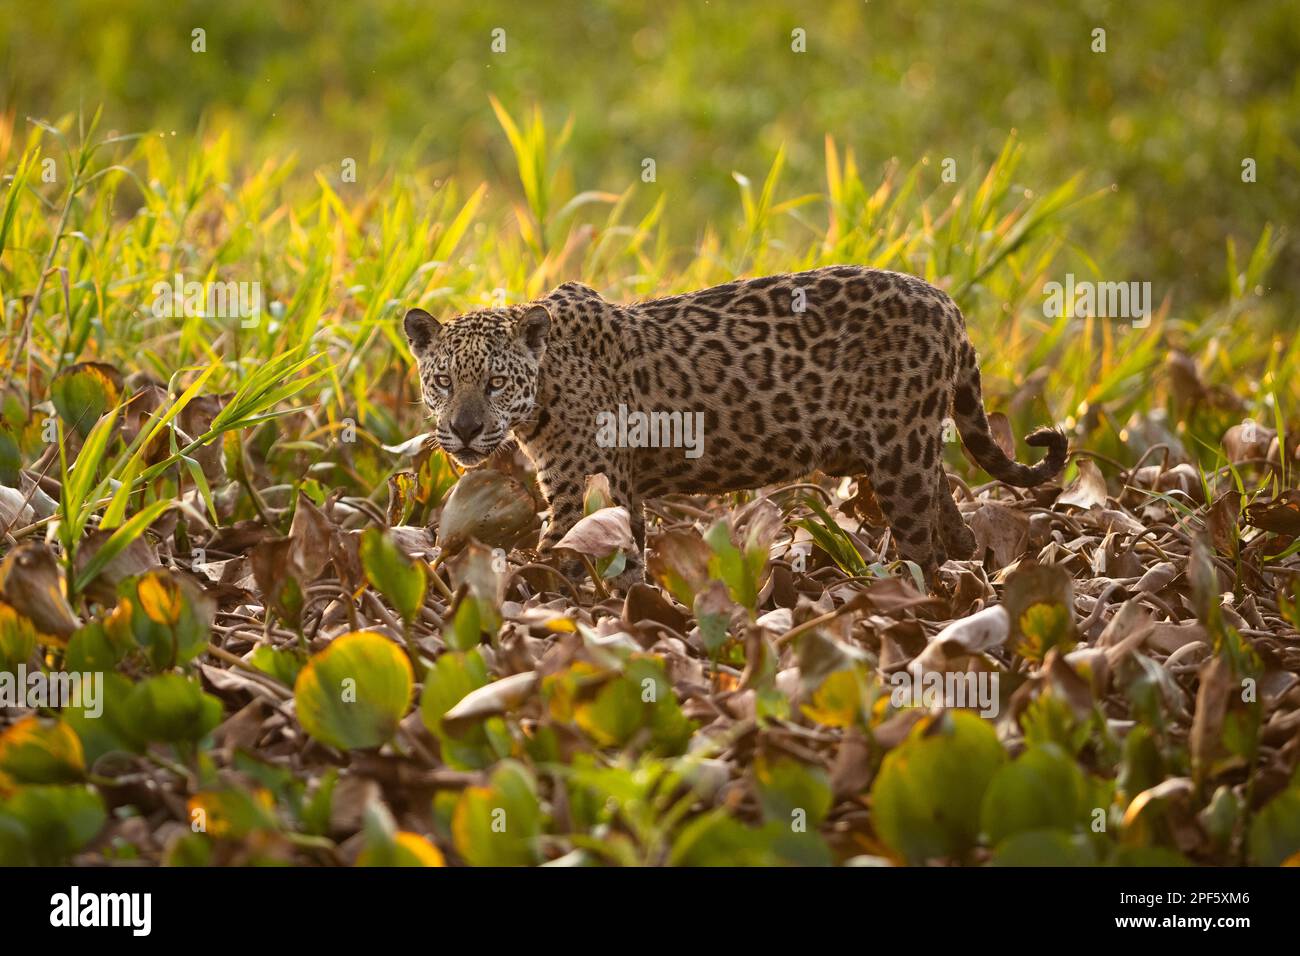 A Jaguar (Panthera onca) from North Pantanal, Brazil Stock Photo